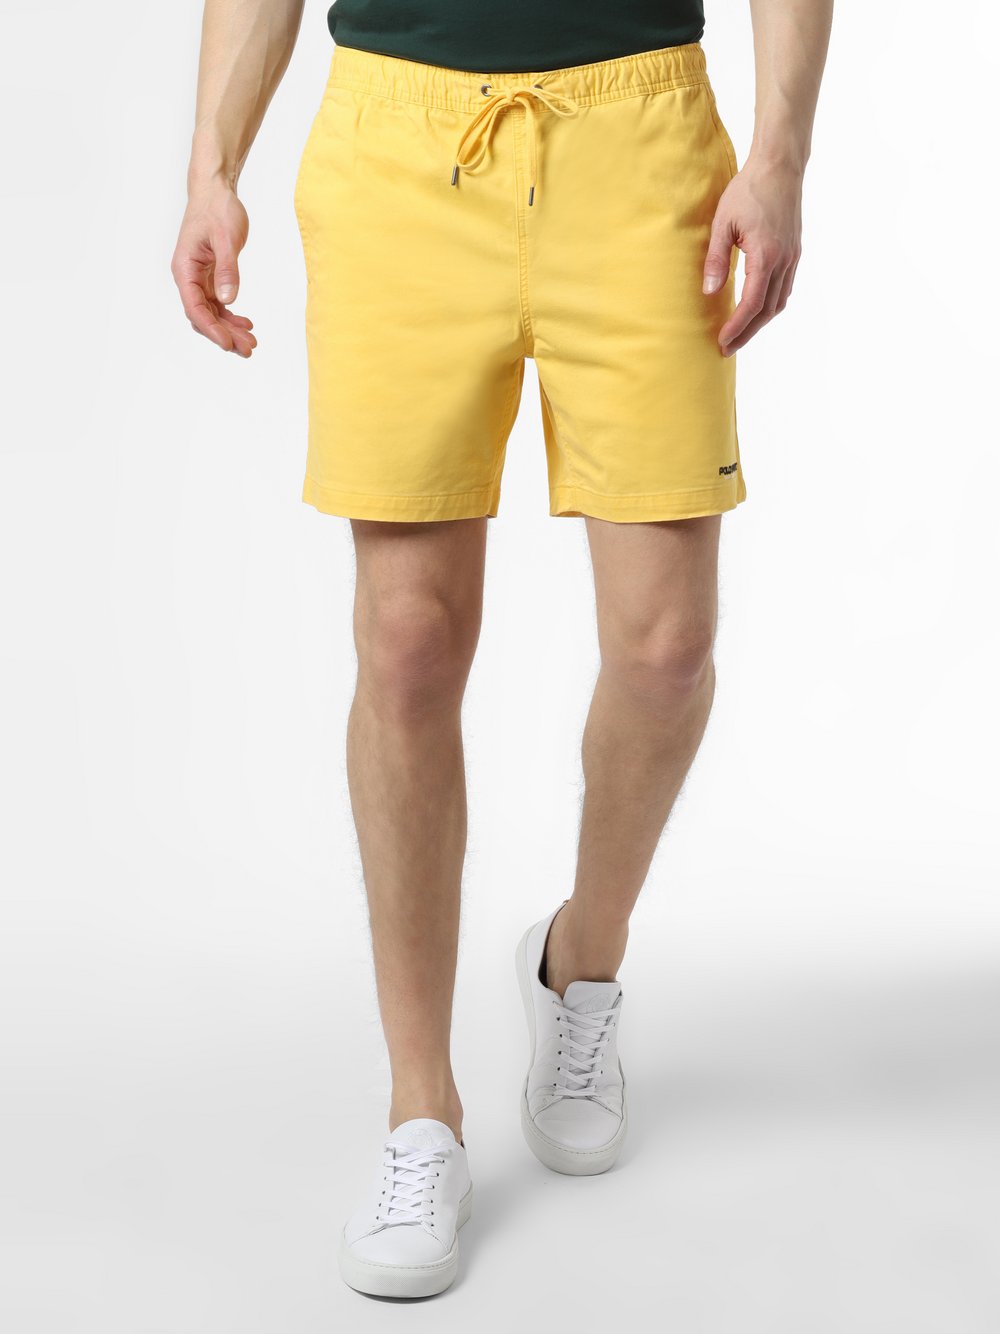 Polo Ralph Lauren - Spodenki męskie – Classic Fit, żółty